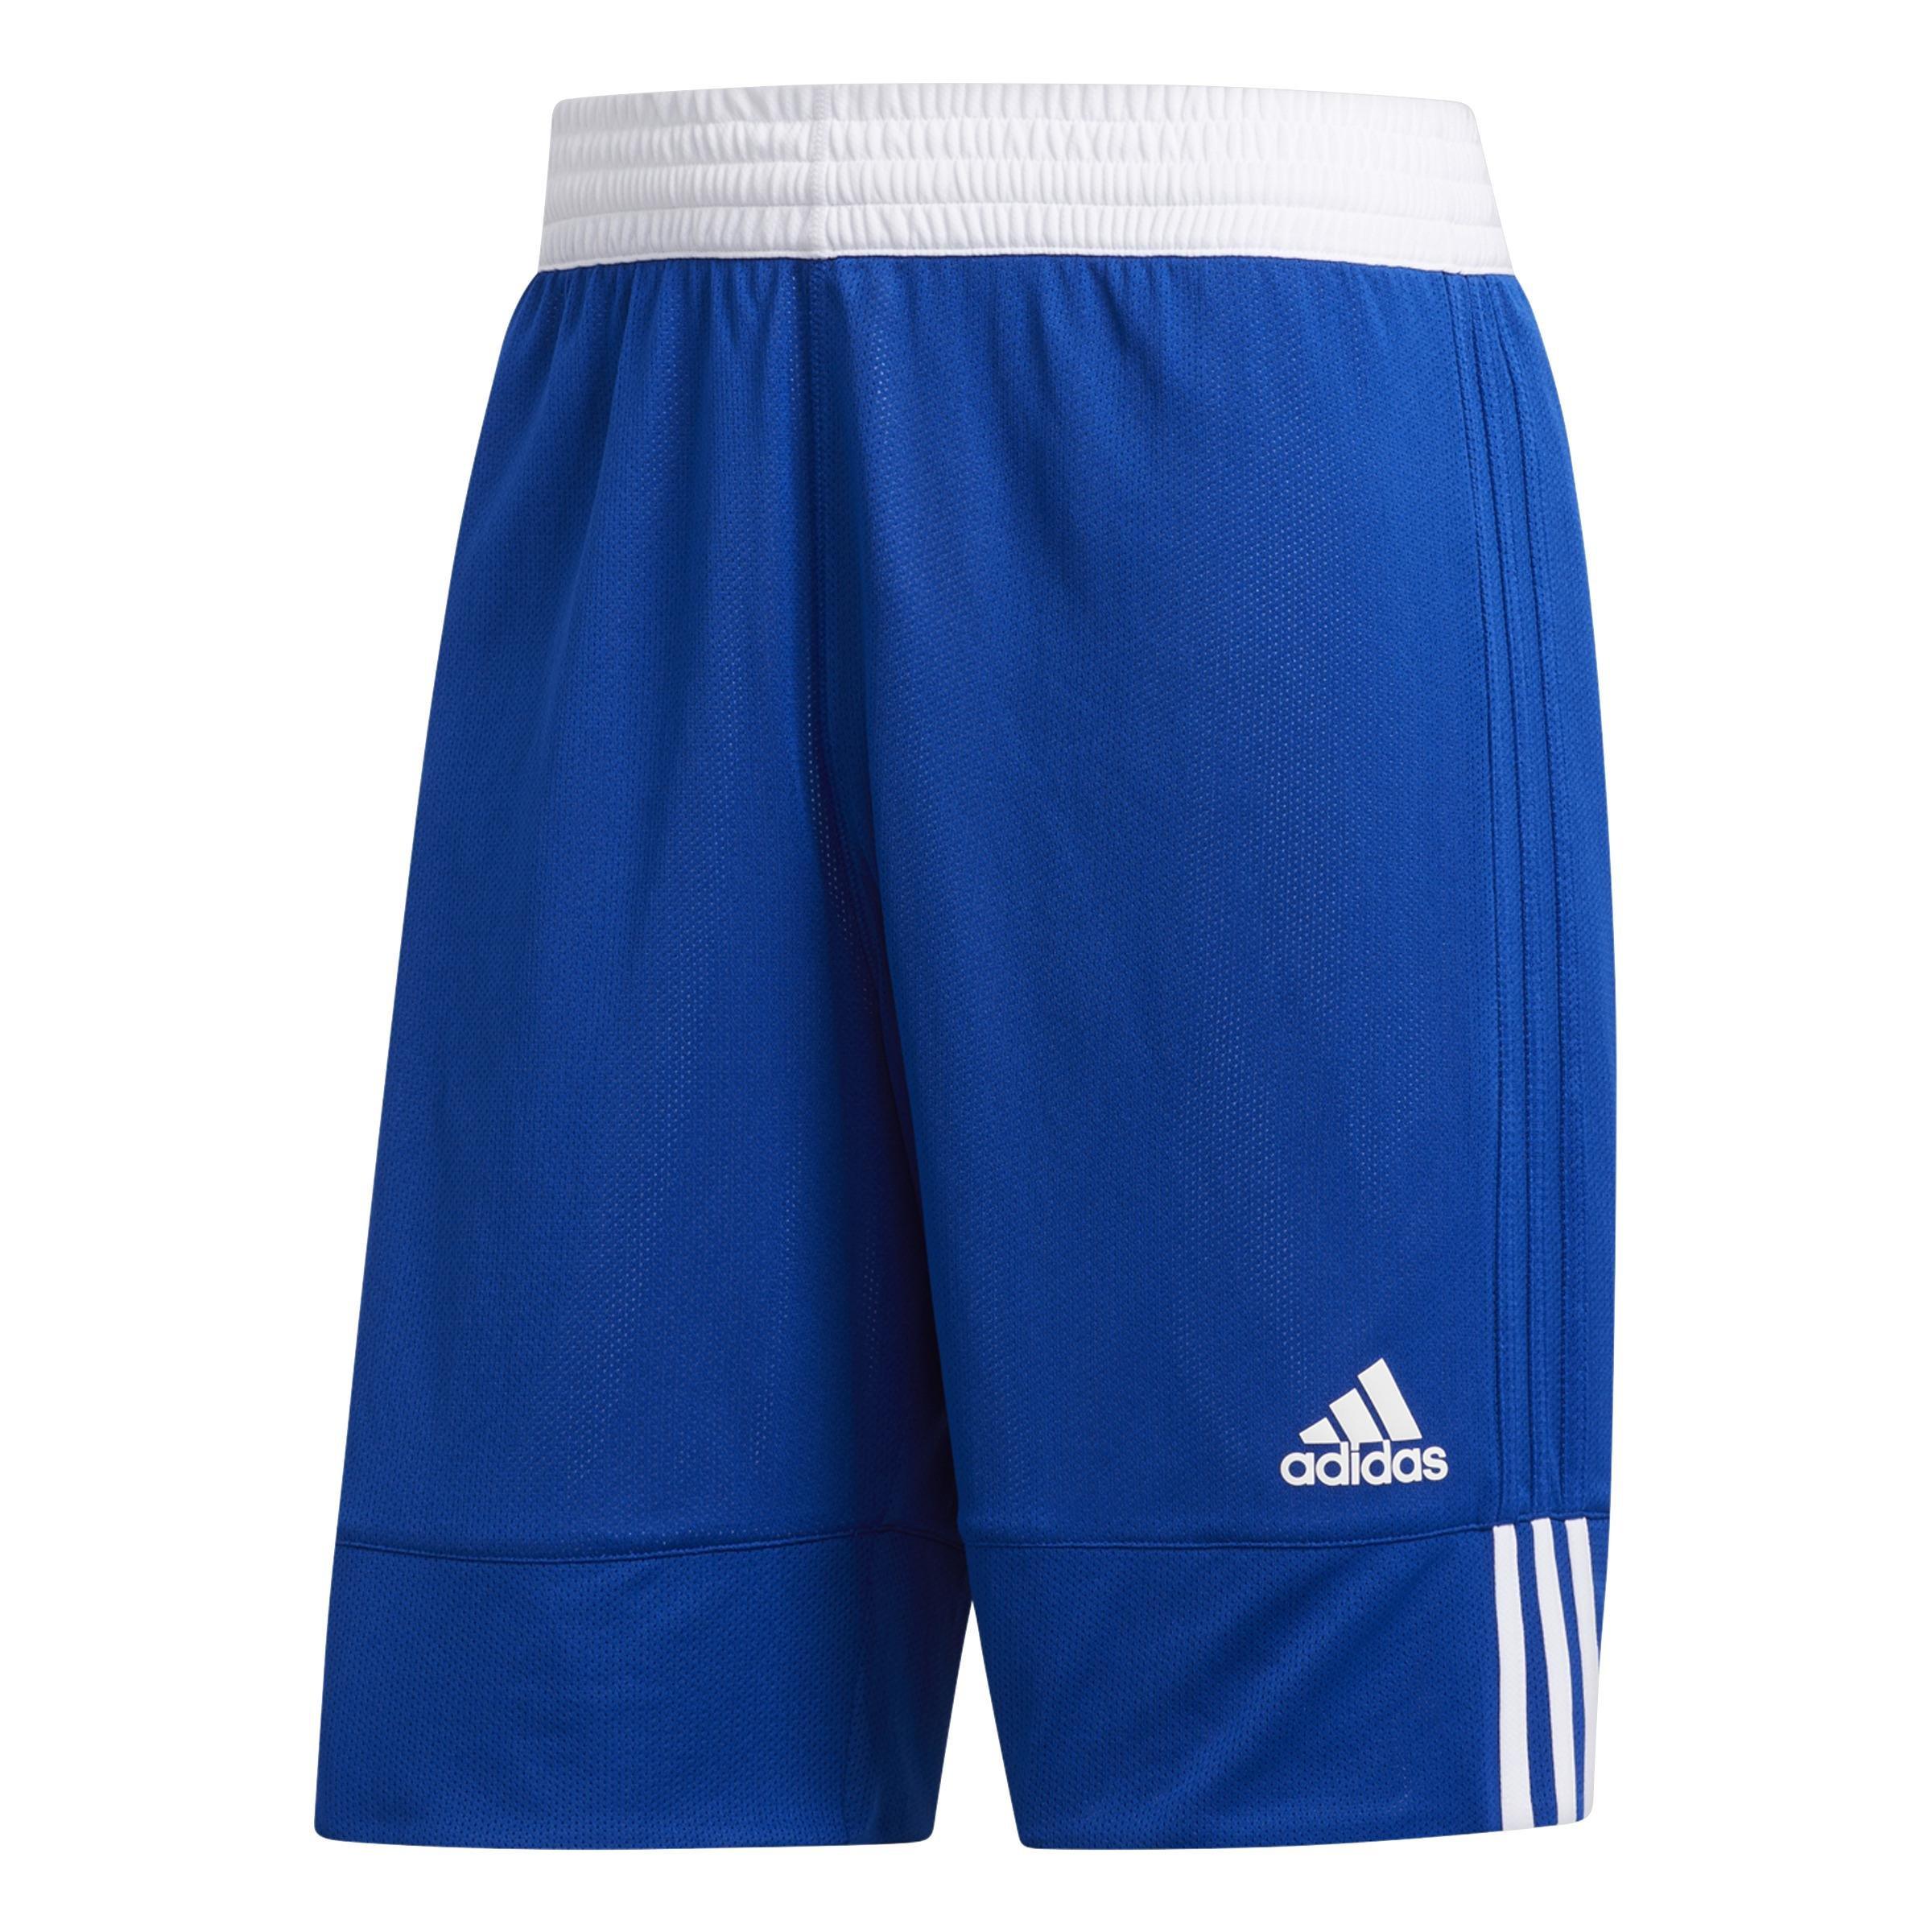 adidas - Men 3G Speed Reversible Shorts, Blue